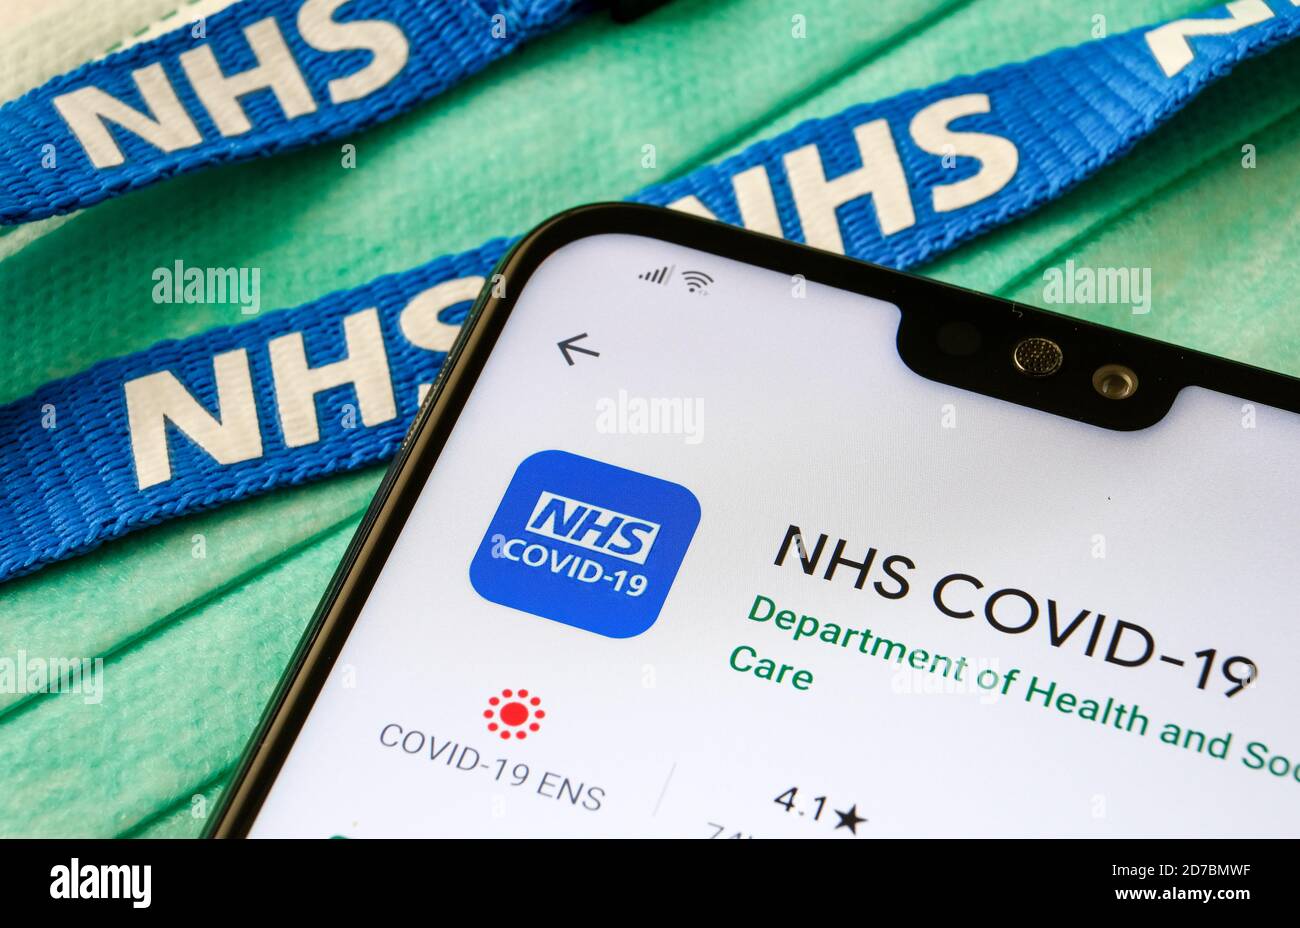 Aplicación NHS COVID-19 vista en Play Store en la pantalla del smartphone junto a las máscaras virales y el cordón NHS. Foto de stock